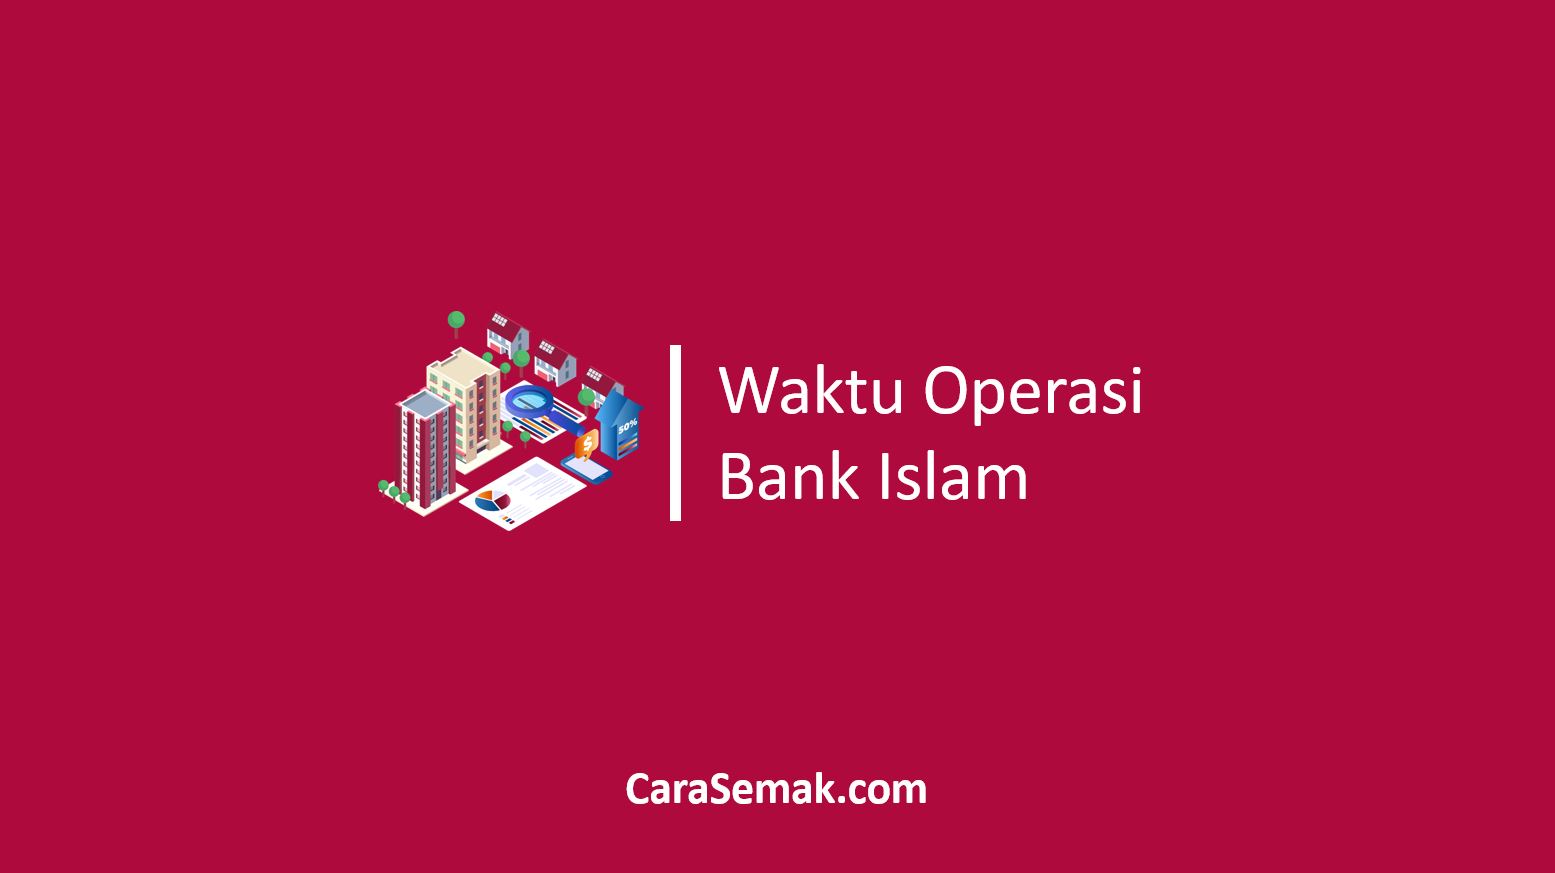 Waktu Operasi Bank Islam